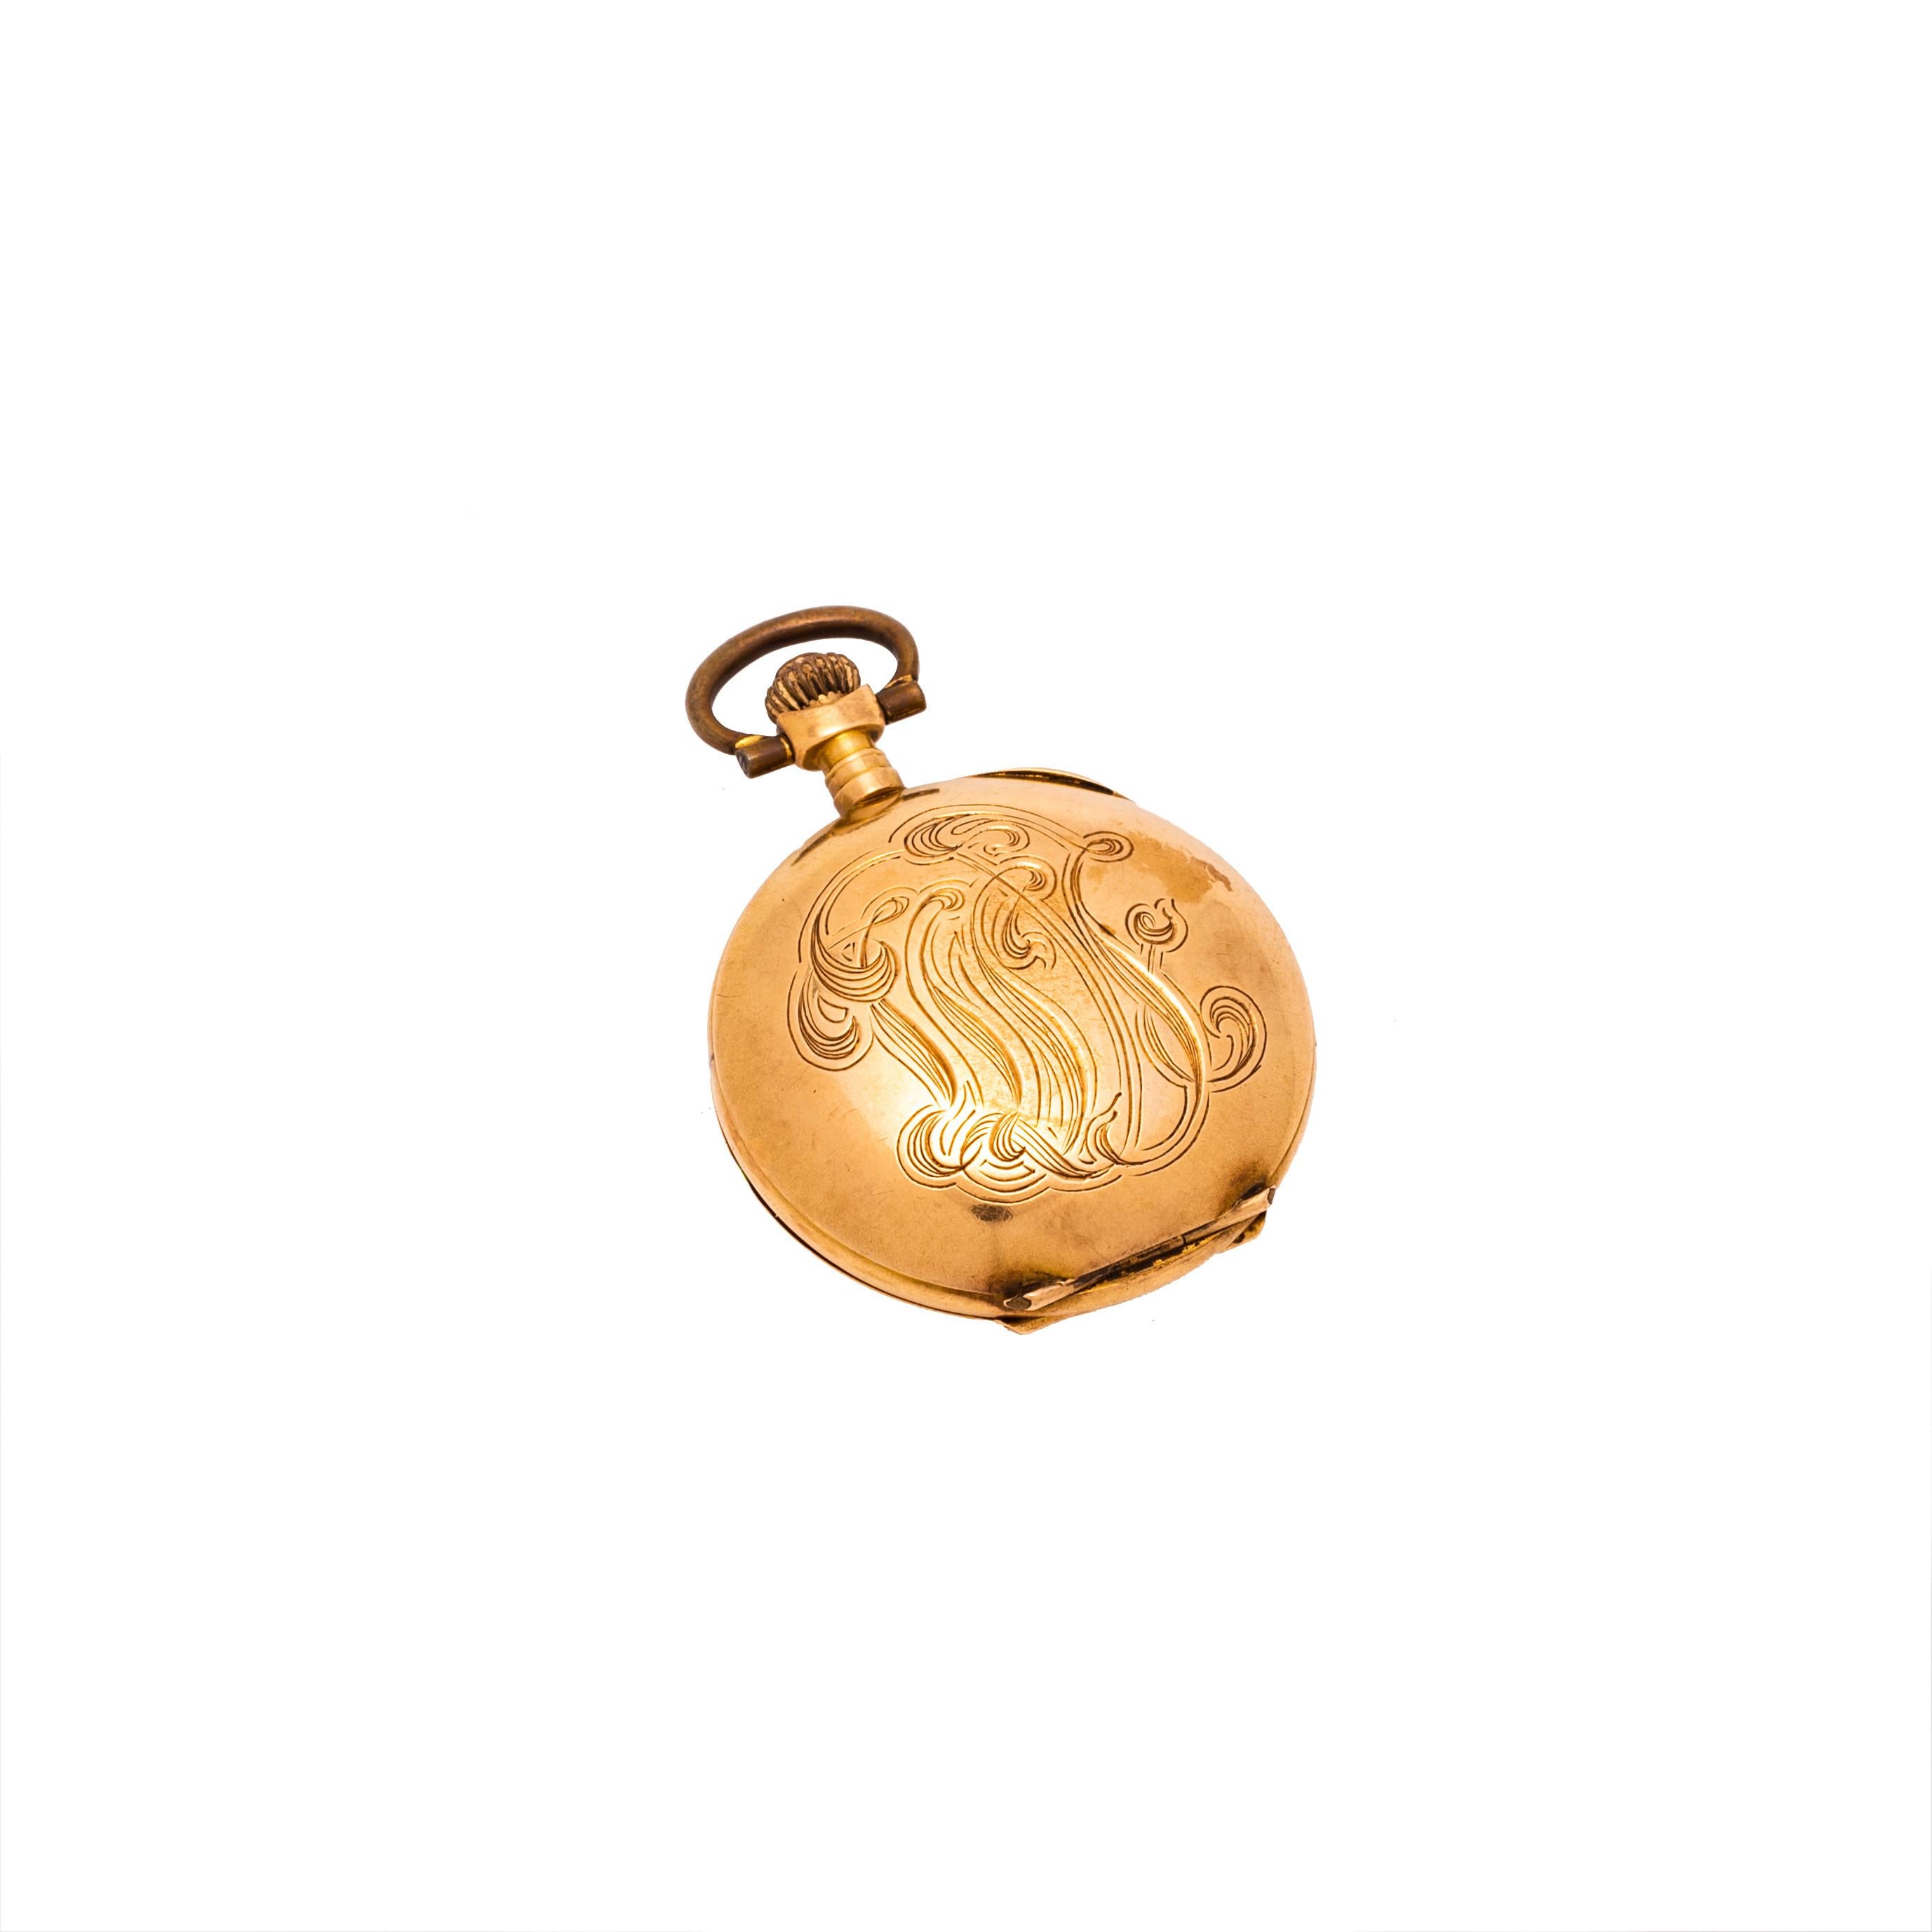 Damen Taschenuhr 18kt Gold mit Schleife Motiv auf der Vorderseite
funktioniert nicht
3 cm breit